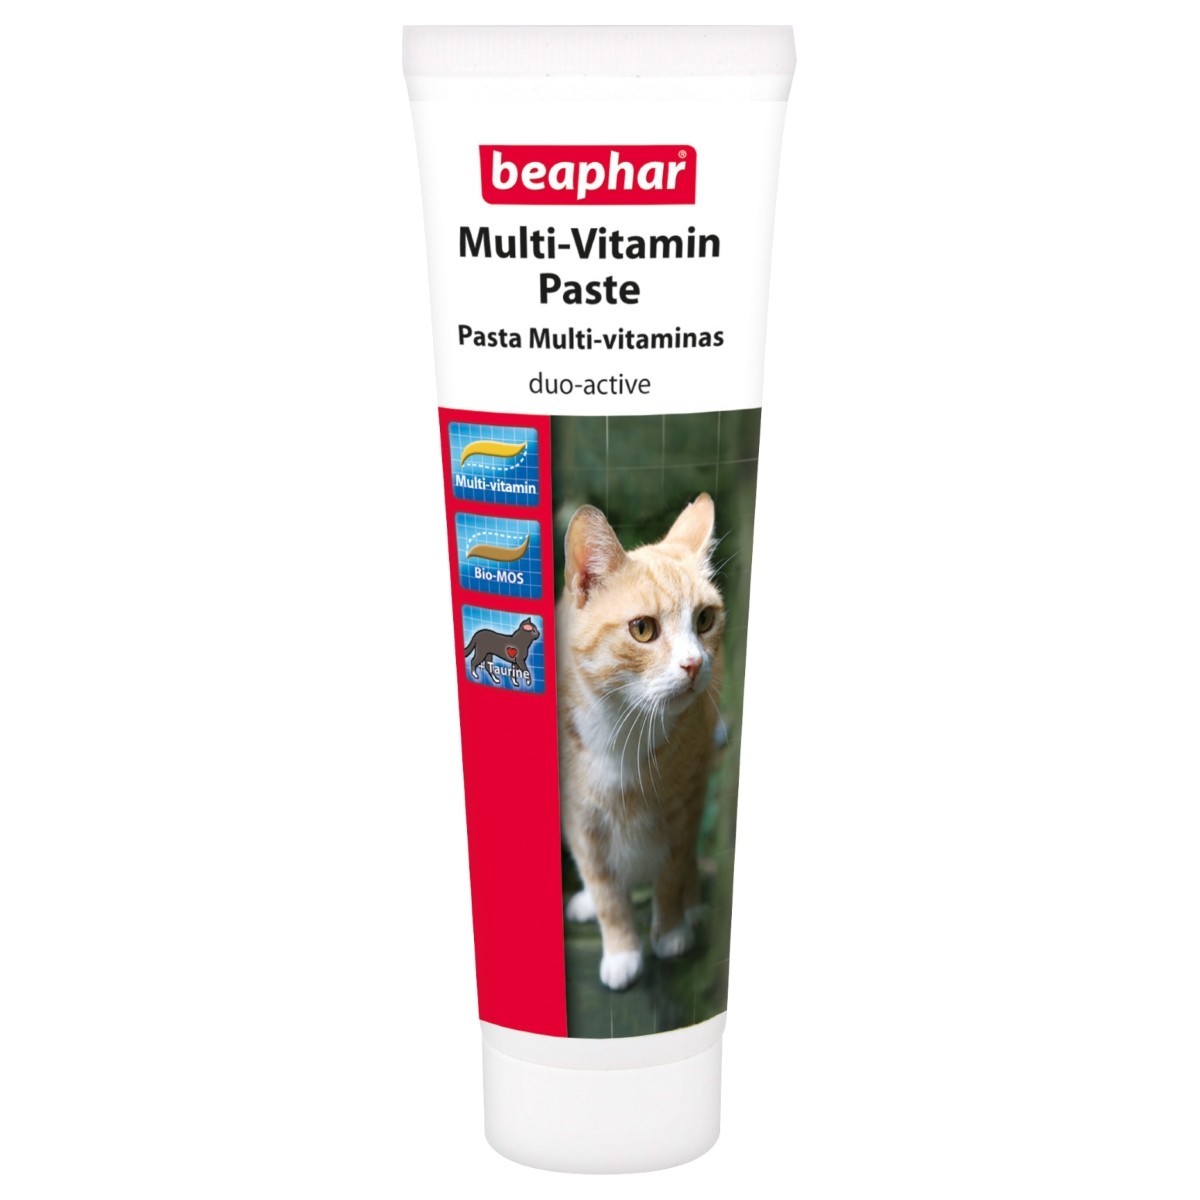 Как дать кошке пасту. Beaphar Vitamin paste. Beaphar Duo Active pasta 100 gr для собак. Beaphar Multi-Vitamin paste для кошек. Паста Beaphar Duo Active для кошек.